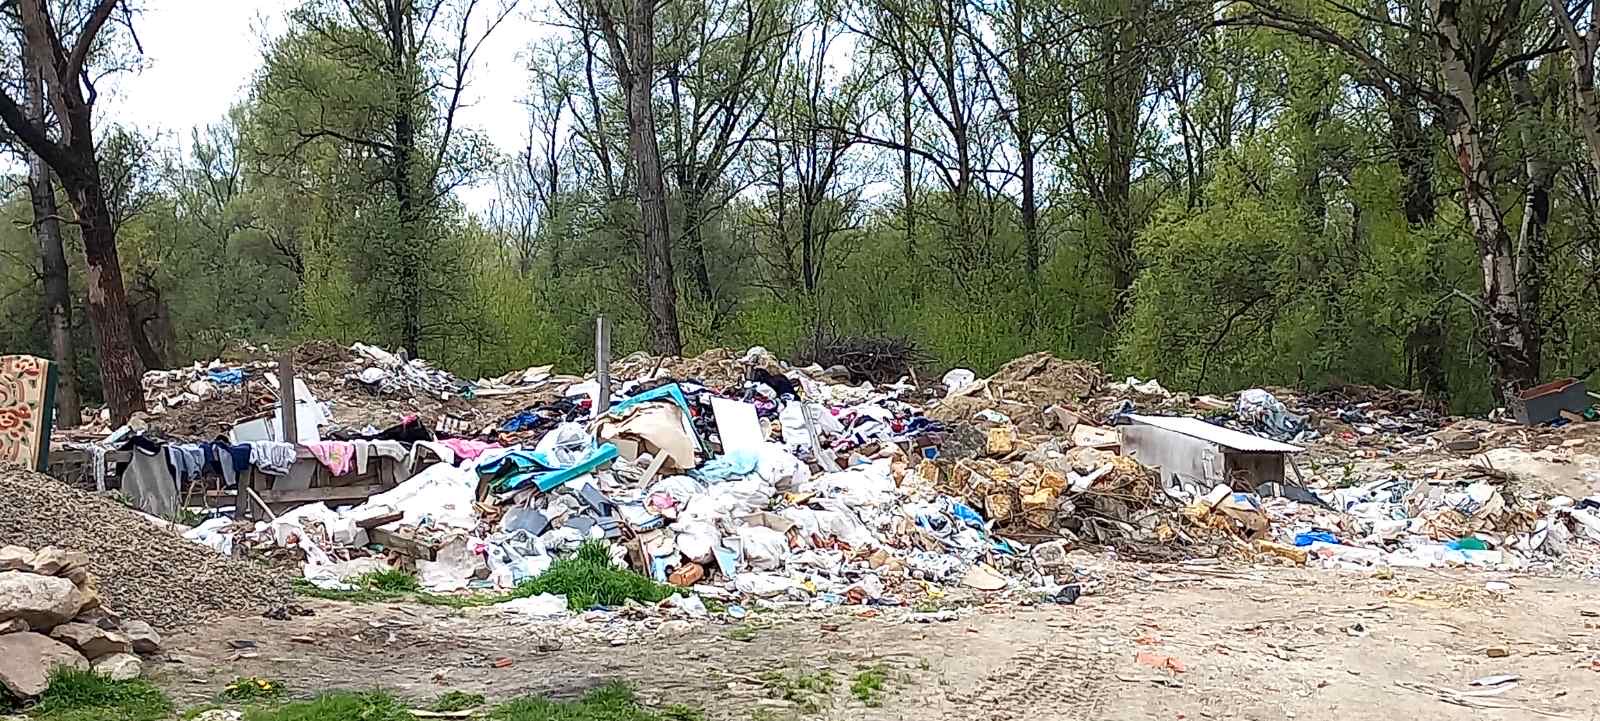 Державна екологічна інспекція Закарпаття за заявами громадян
встановила на Ужгородщині стихійні сміттєзвалища.